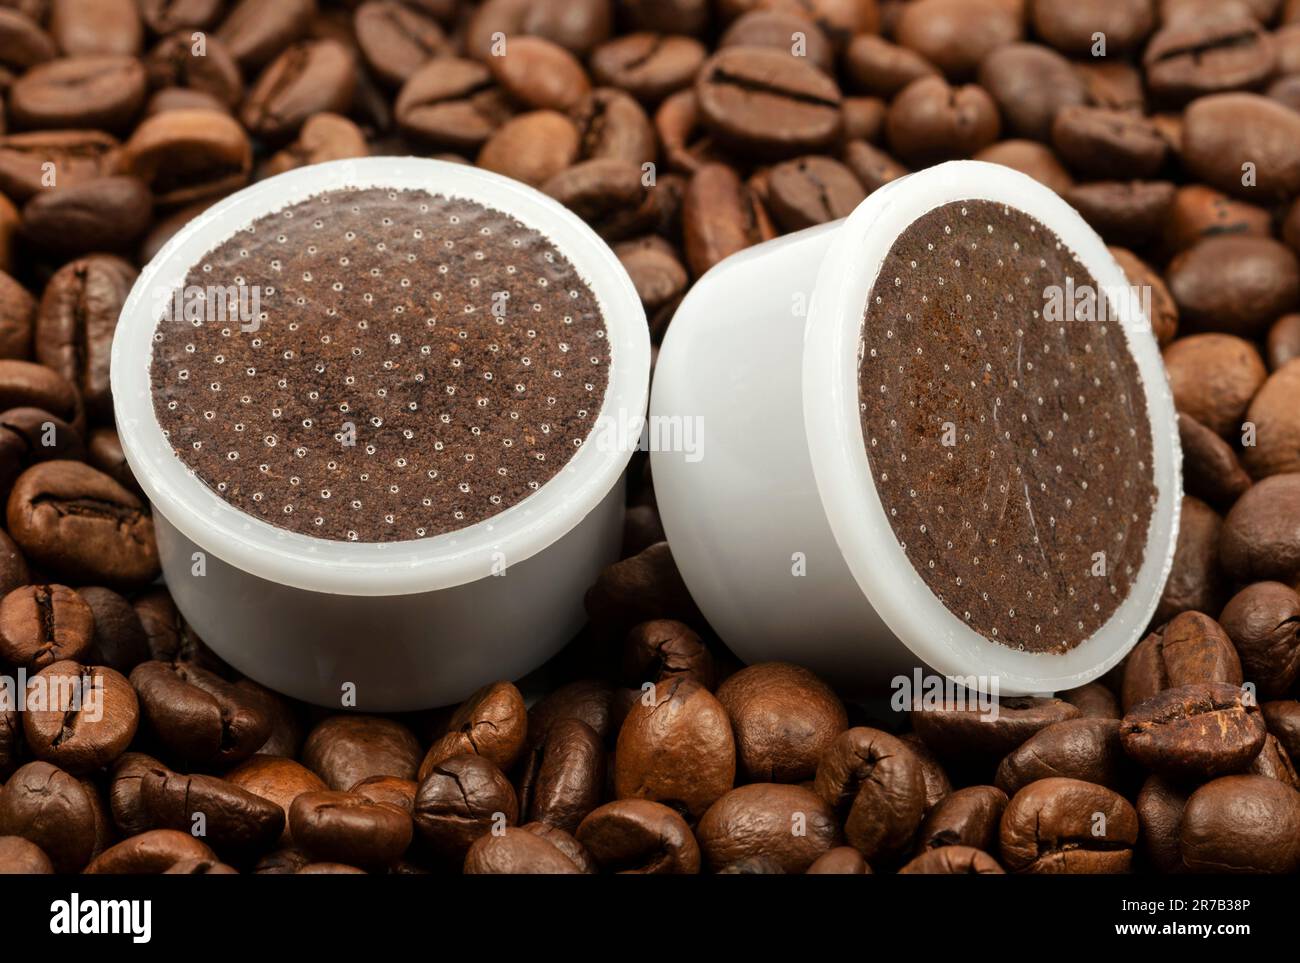 Puntos de café espresso en el fondo de los granos de café Foto de stock